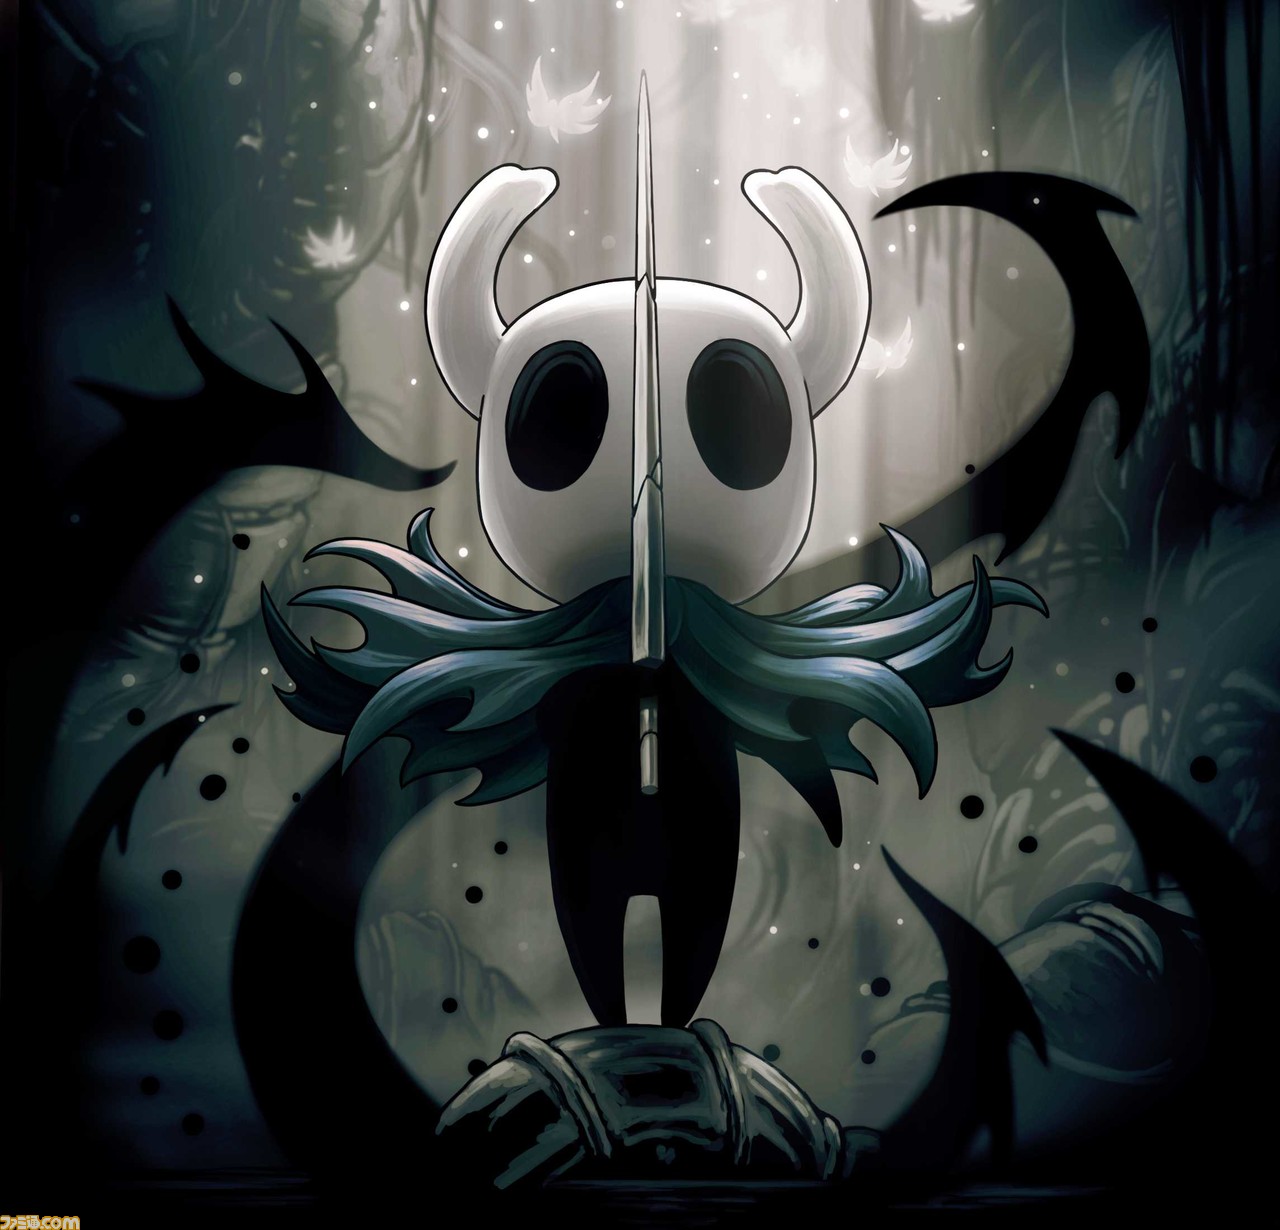 『Hollow Knight（ホロウナイト）』のパッケージ版がFangamerより12月12日に発売決定。コレクターズエディションは放浪者